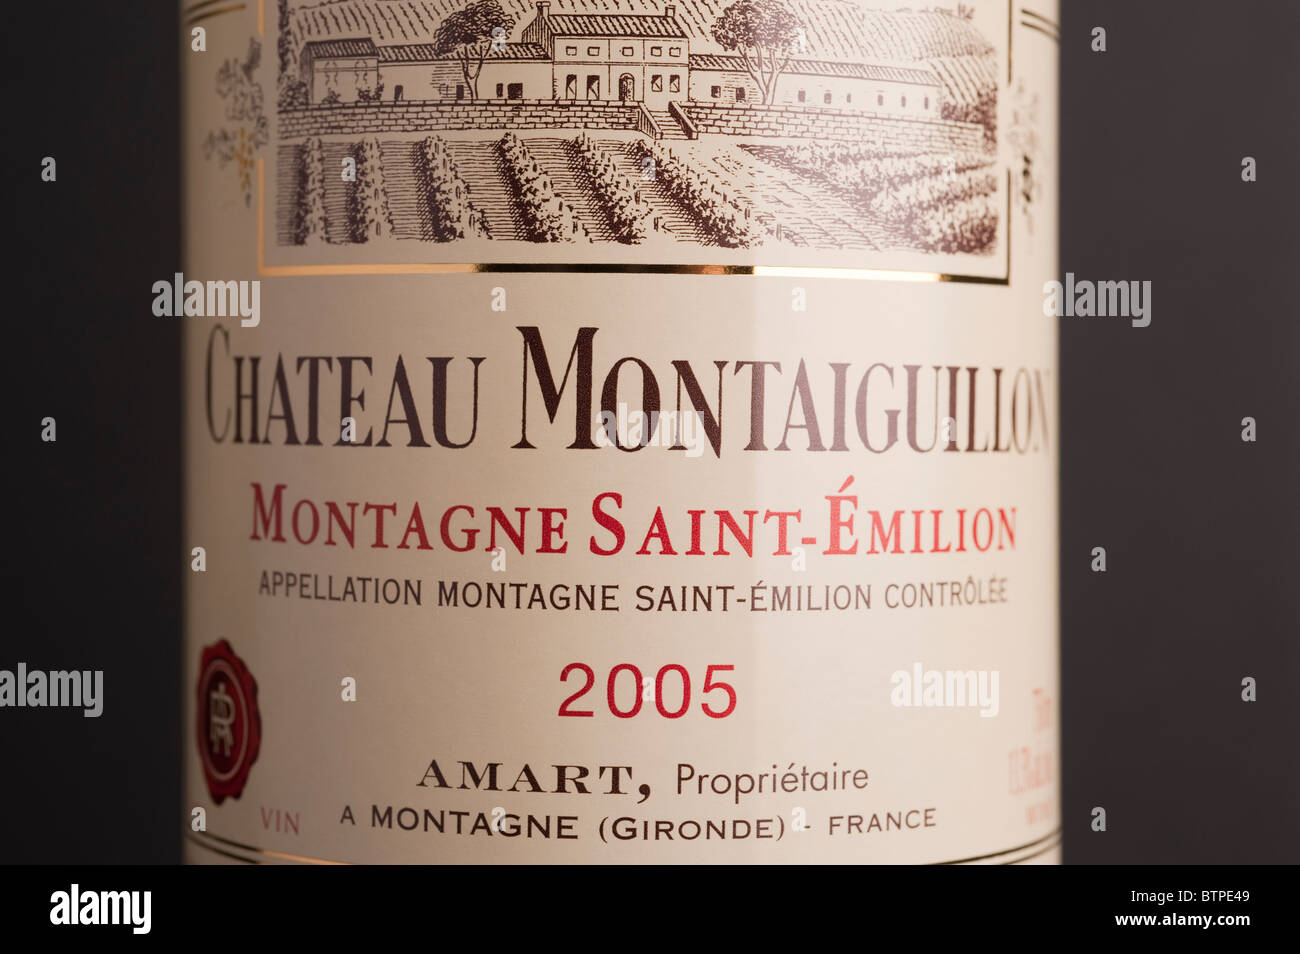 Chateau Montaiguillon wine bottle label Stock Photo